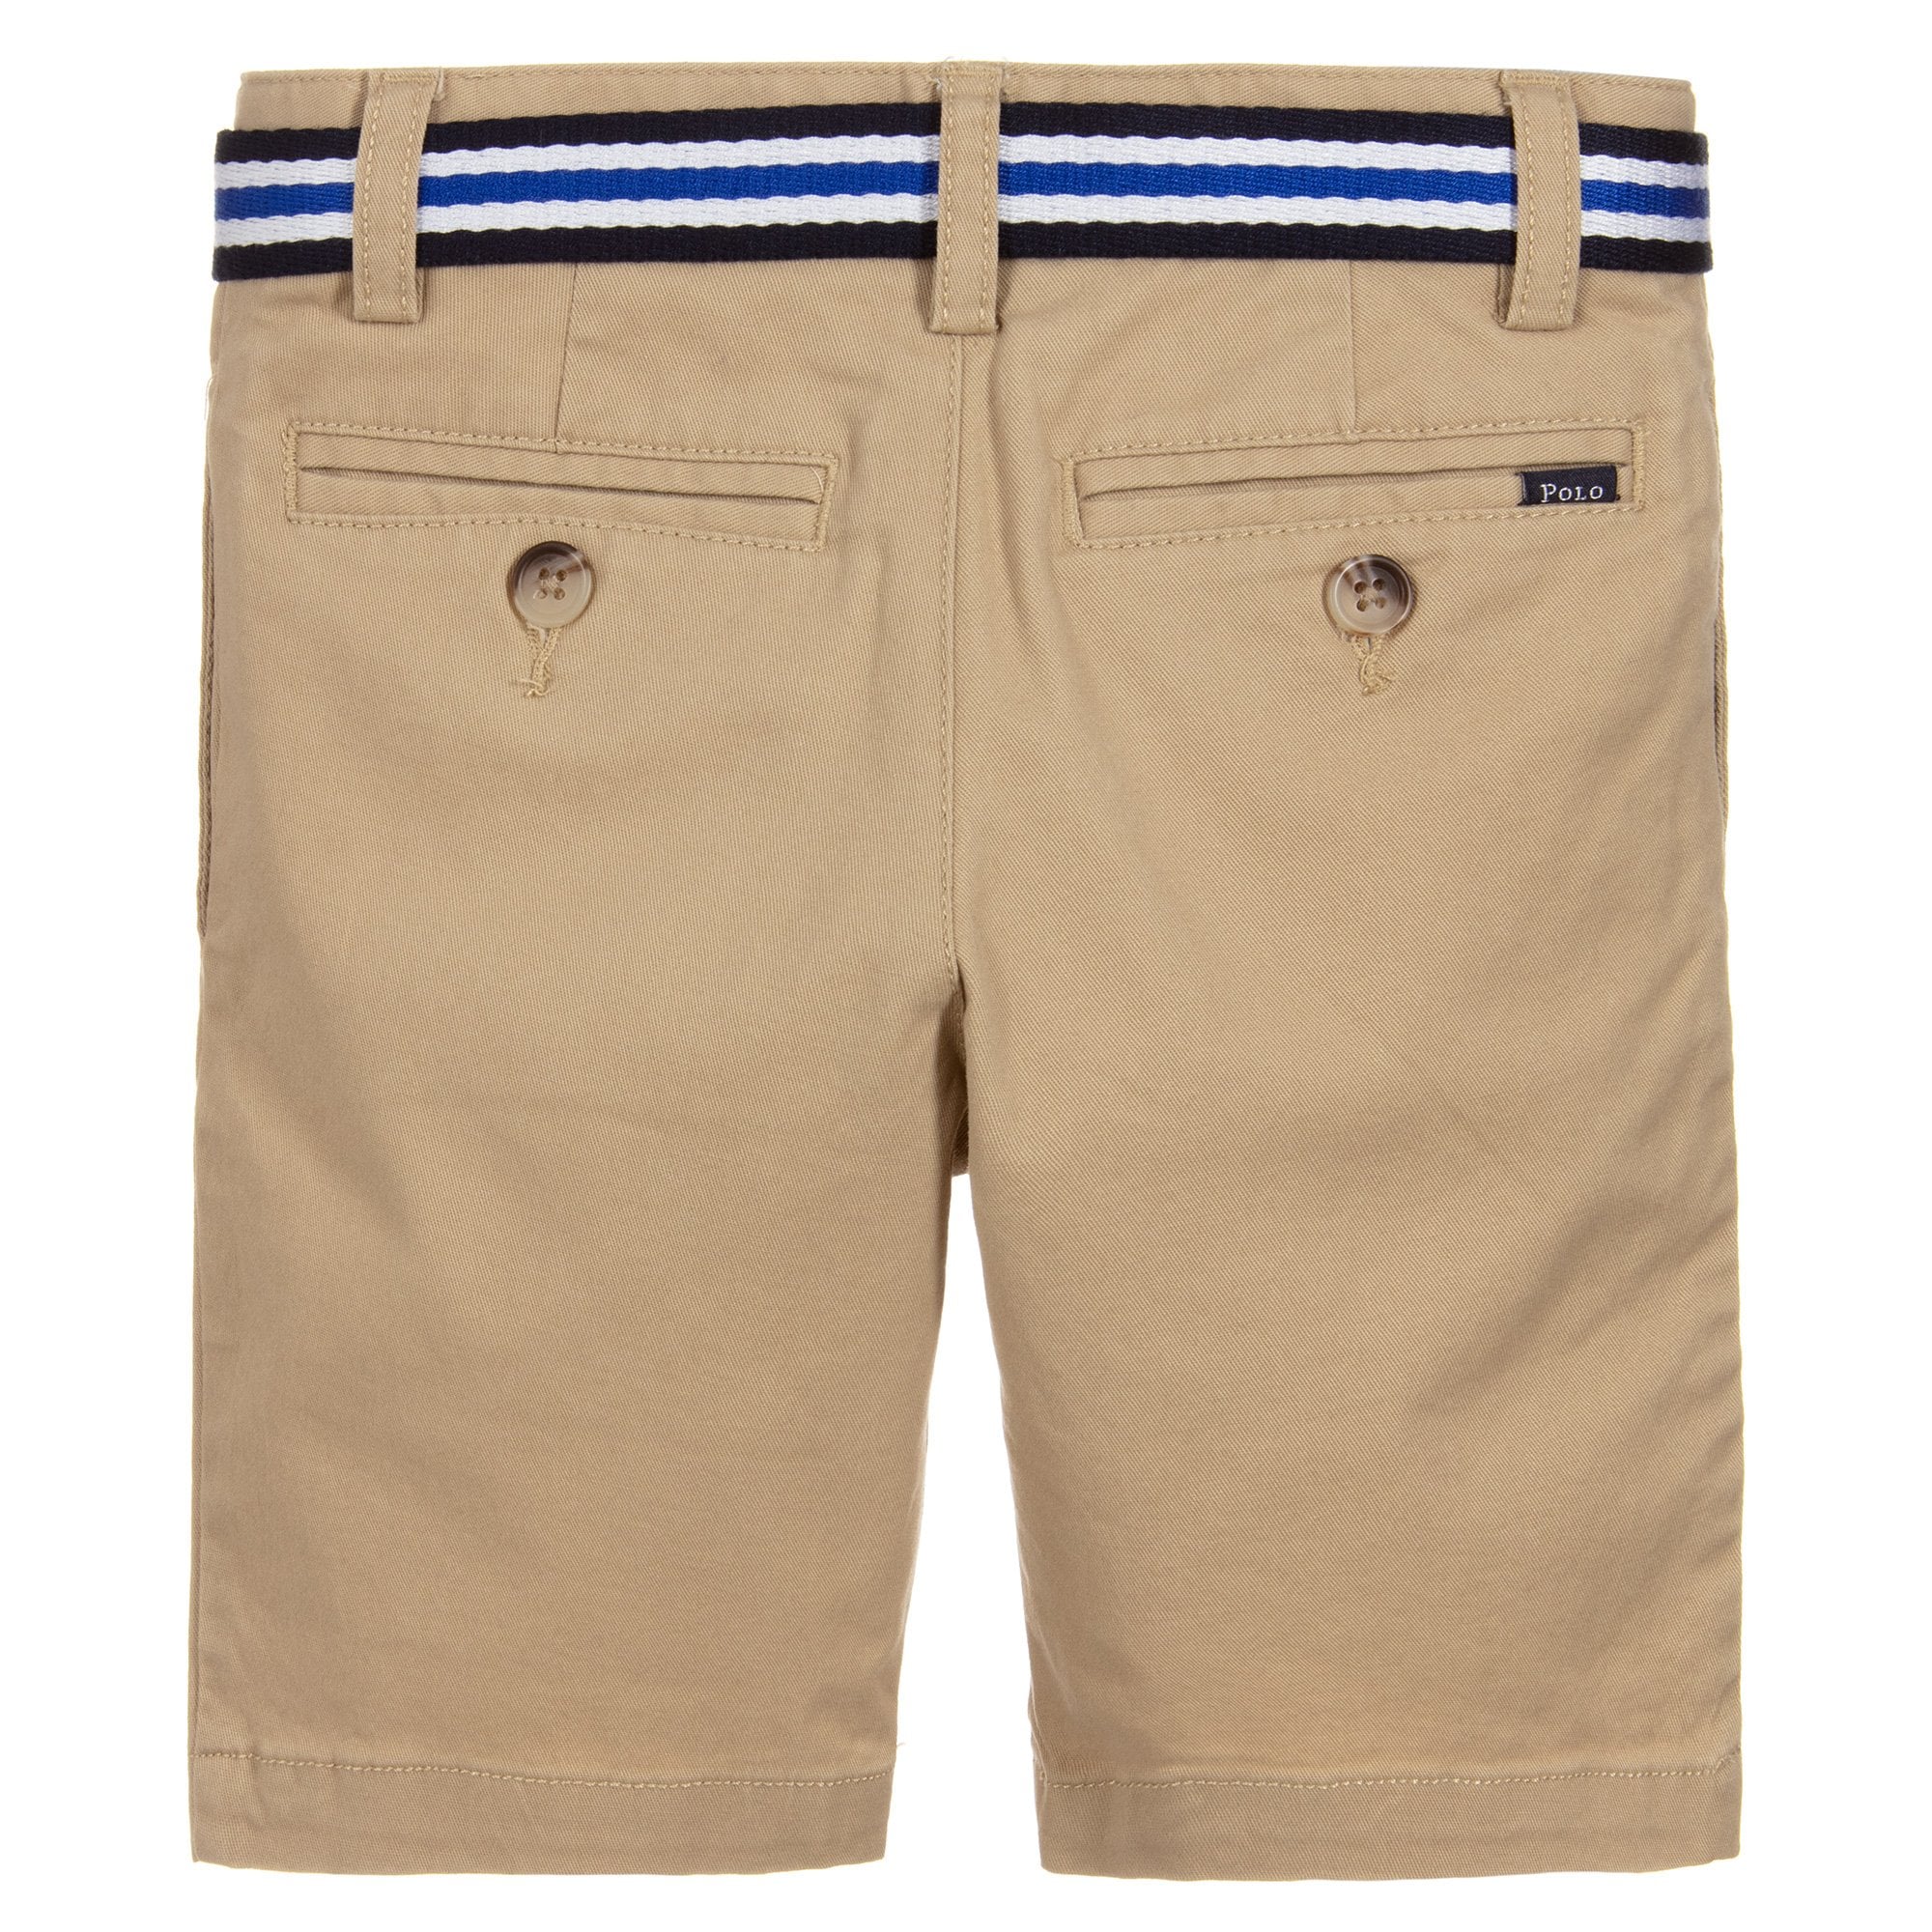 Ralph Lauren Boy's Chino Shorts Sand Grey 4Y